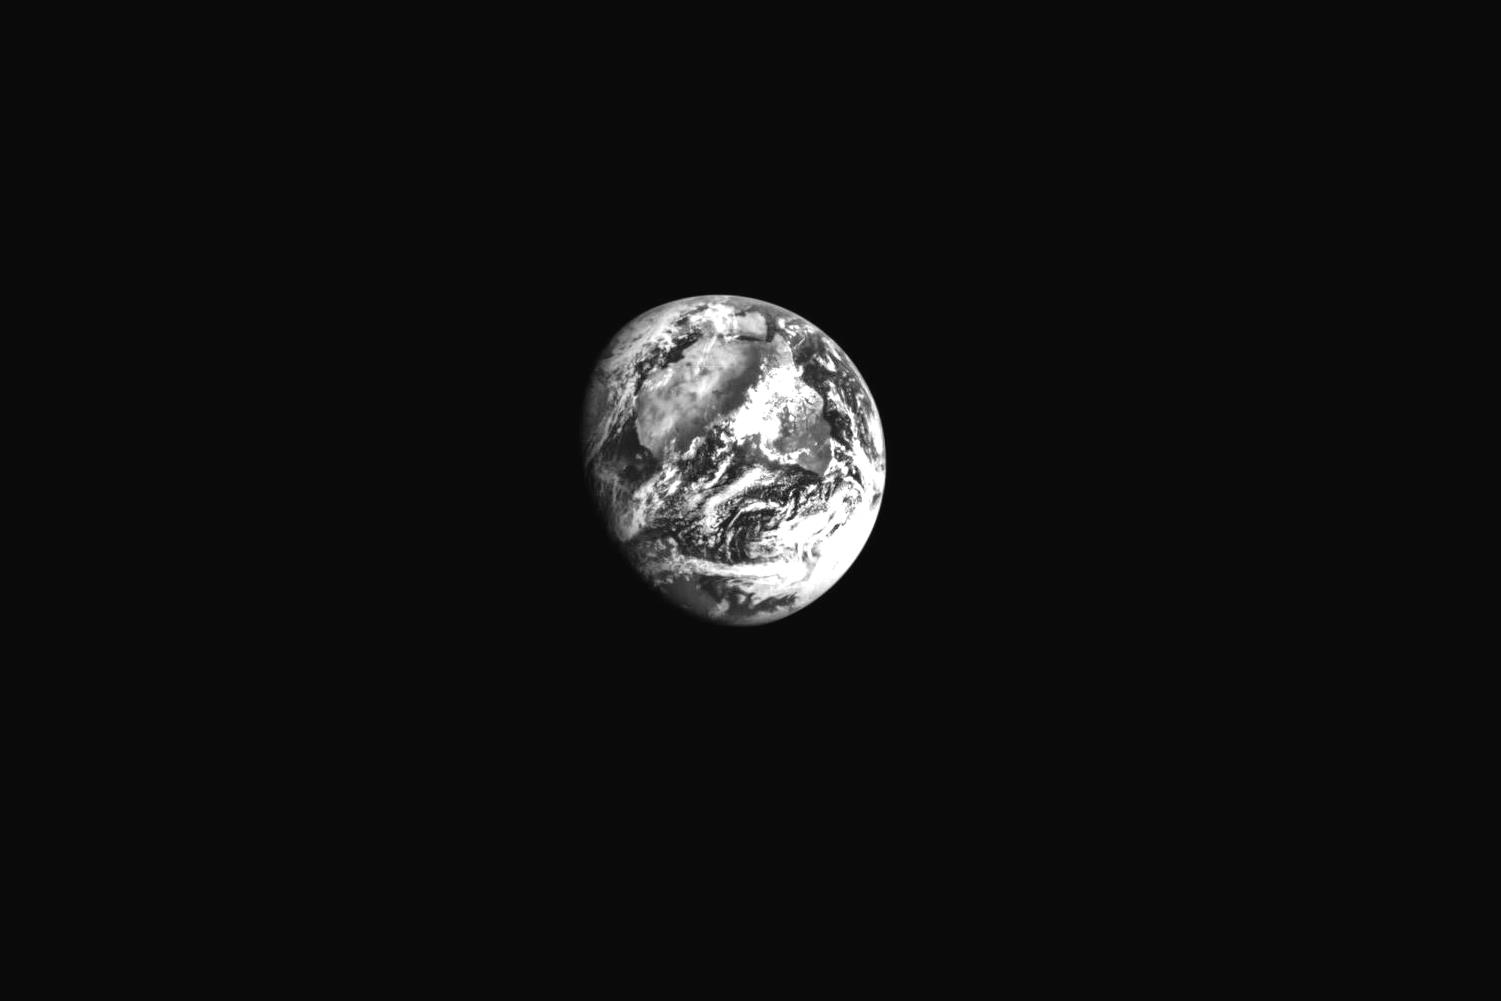 Zemlja snimljena svemirskom letjelicom Artemis 1 Orion. Izvor: Nasa.gov.